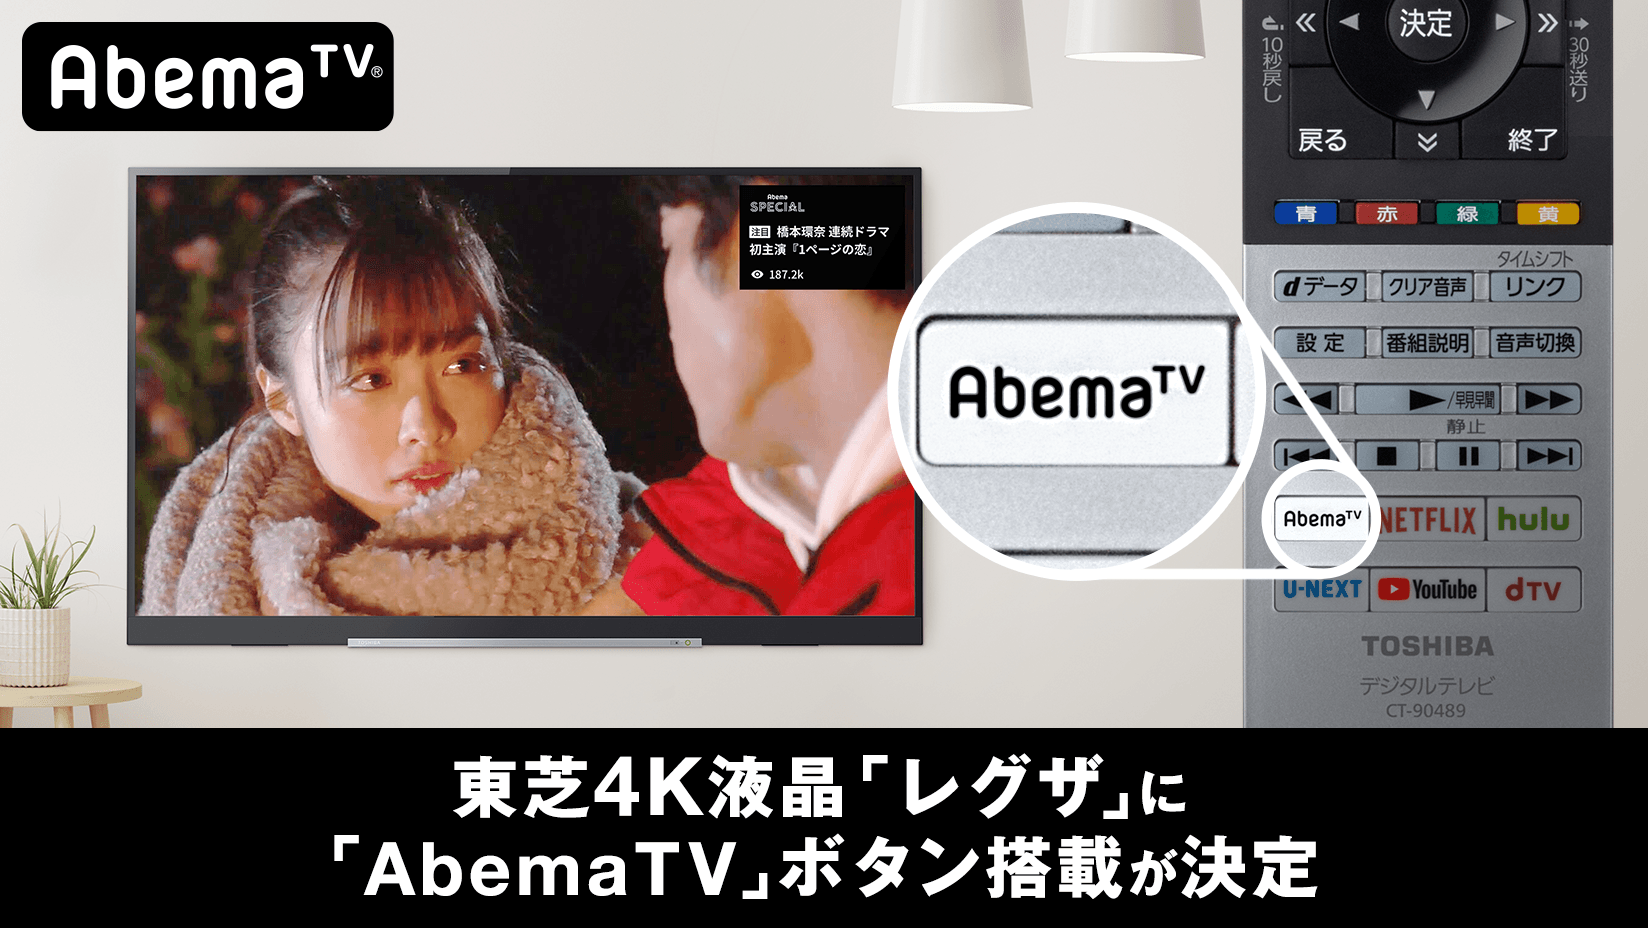 インターネットテレビ局 Abematv が東芝４k液晶テレビ レグザ に対応 リモコンの Abematv ボタンでアプリの起動が可能に 株式会社 Abematv